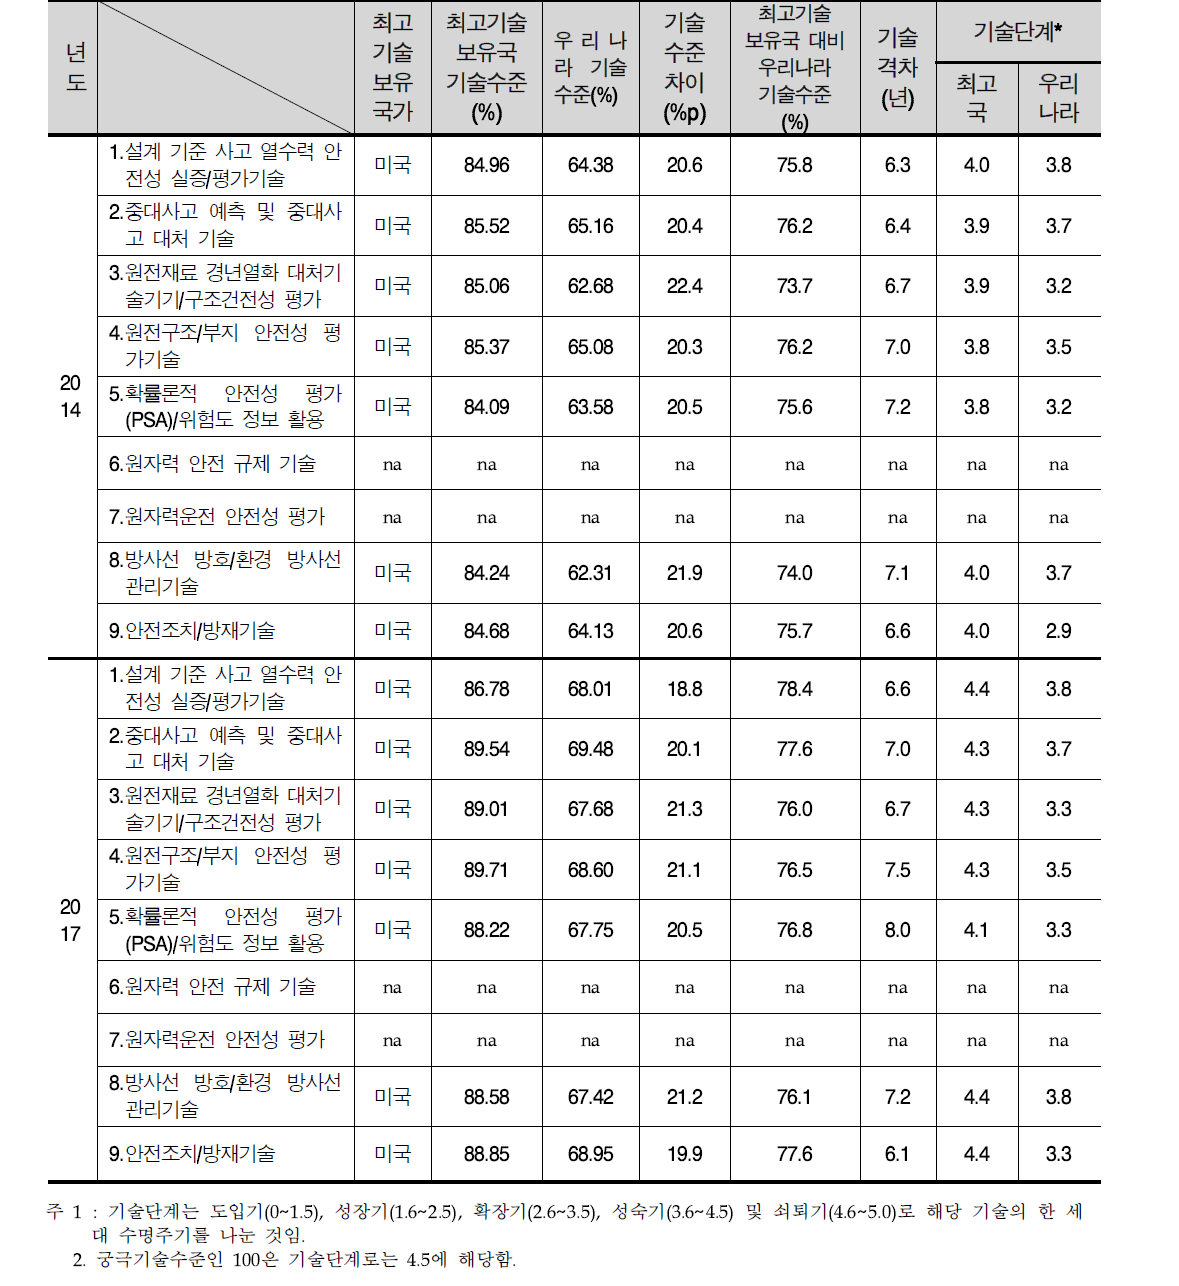 원자력 안전기술(중분류) 기술수준(2014년, 2017년)